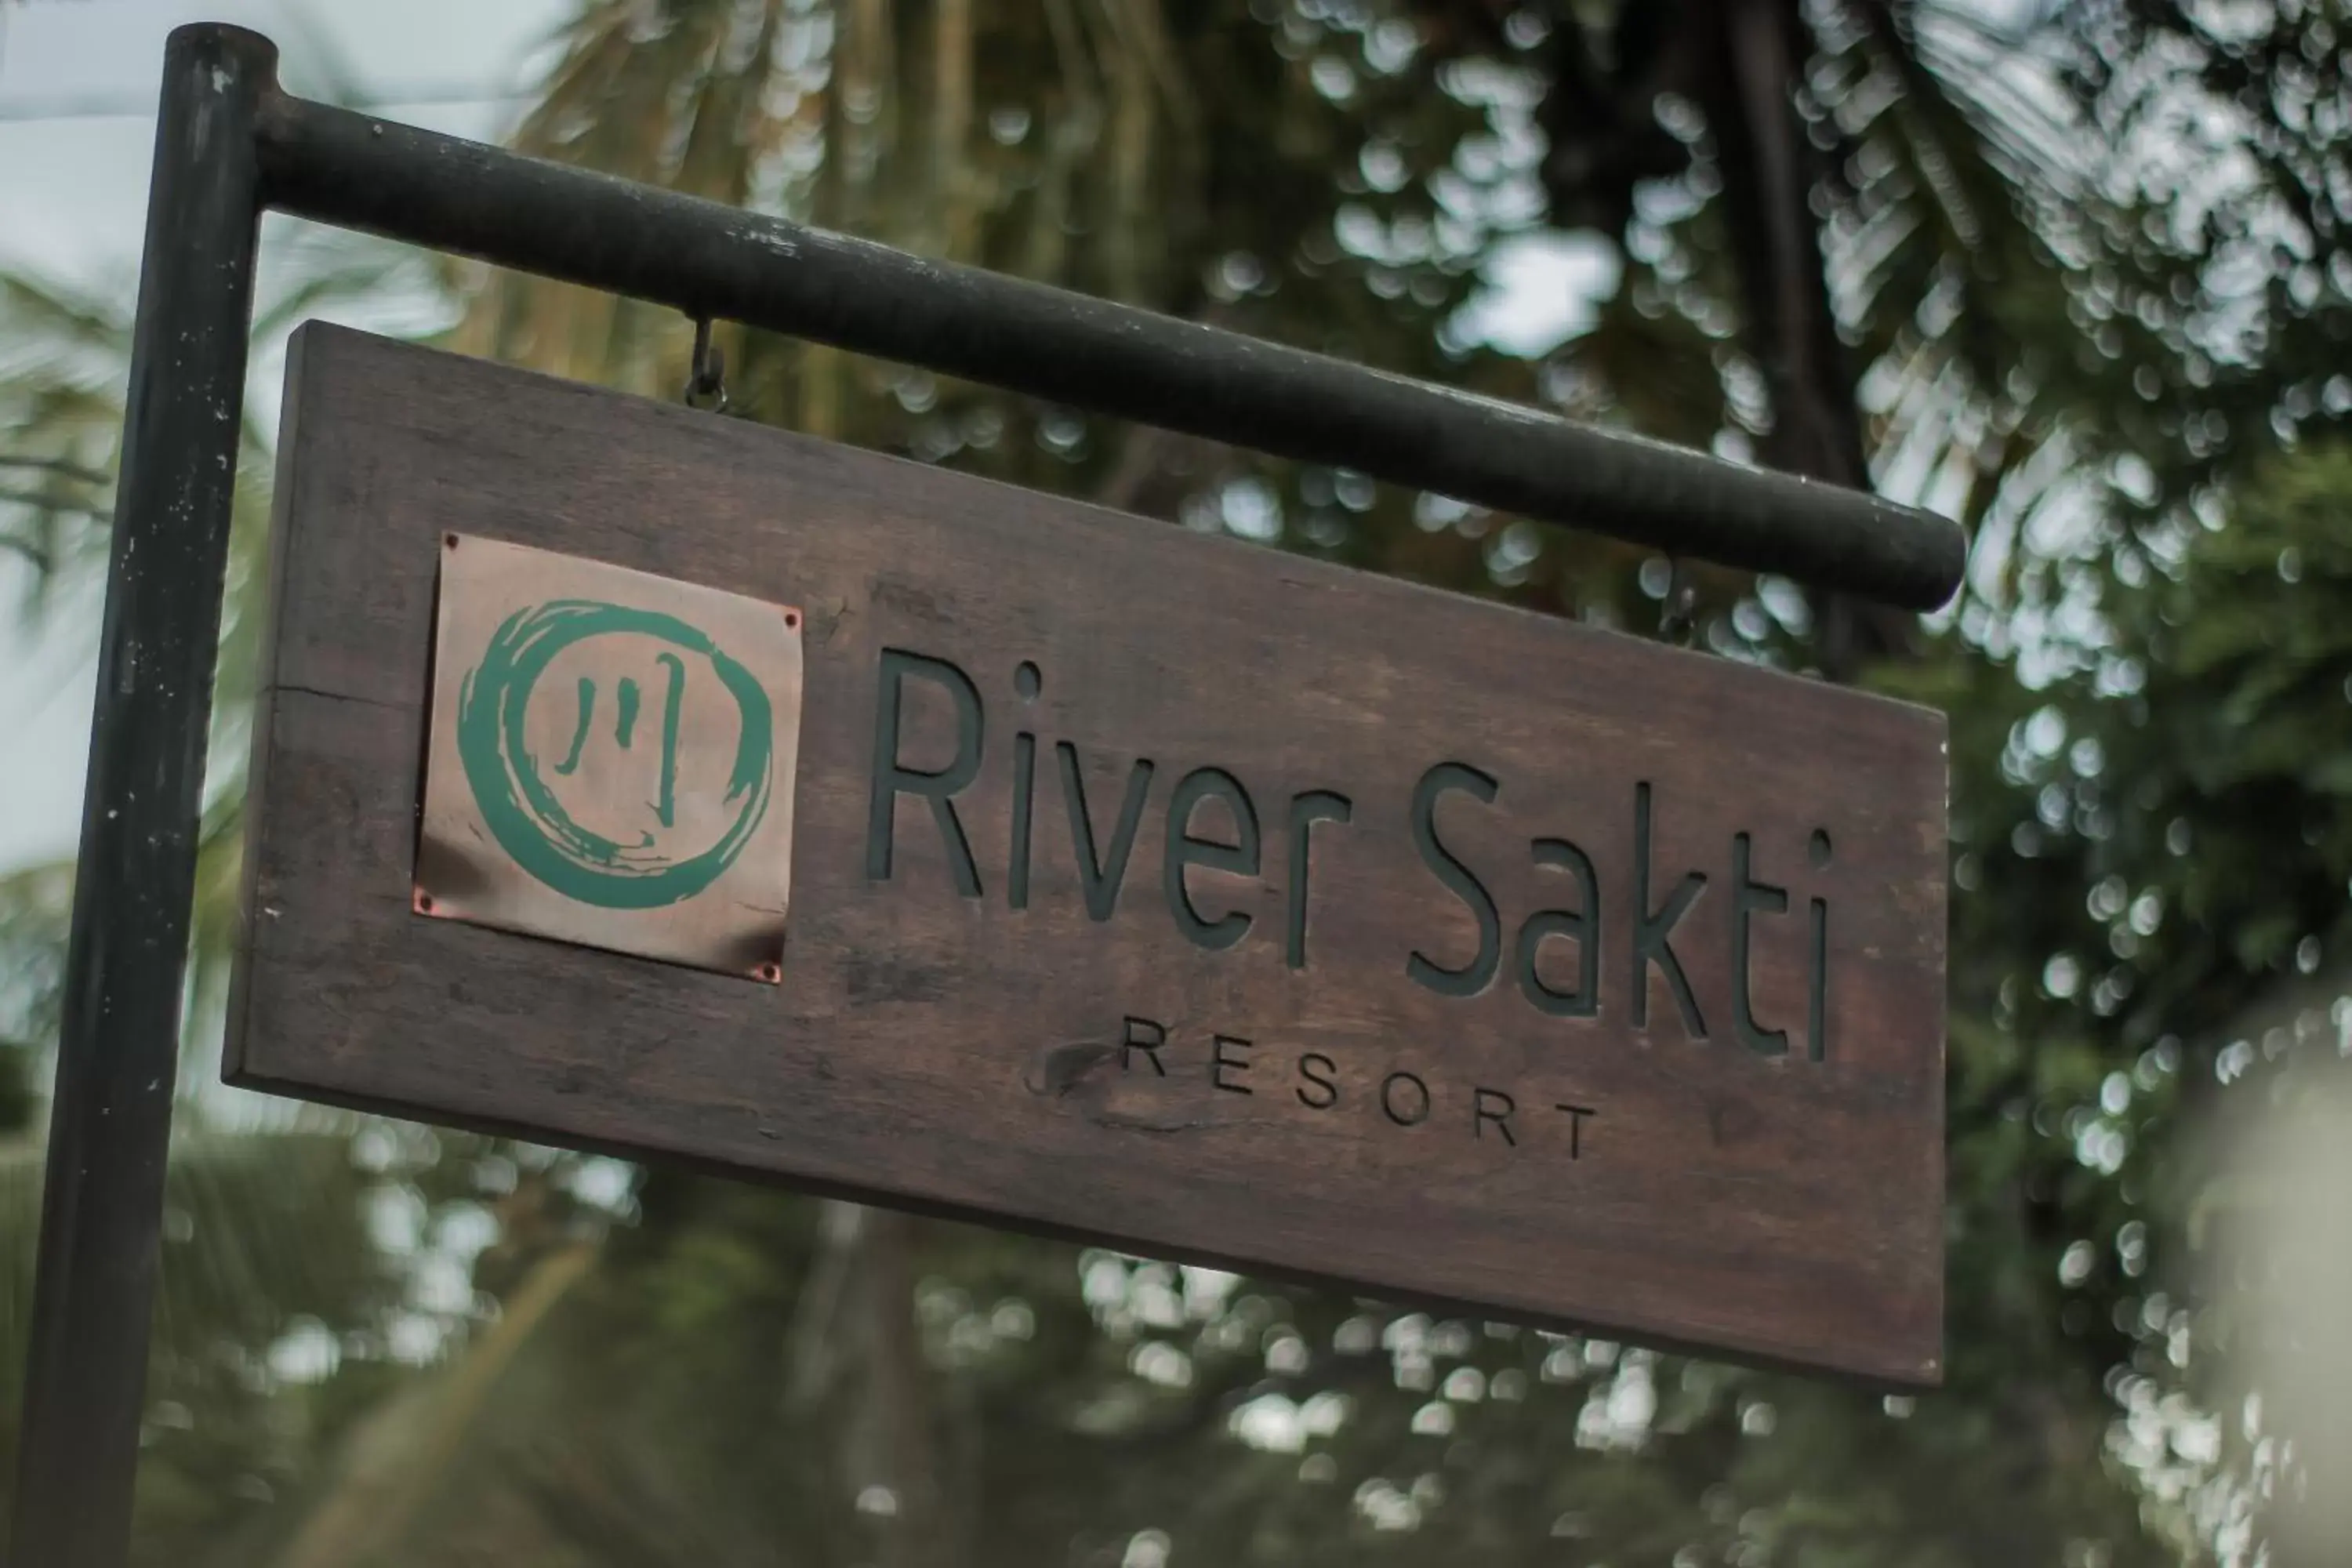 Property logo or sign in River Sakti Ubud by Prasi